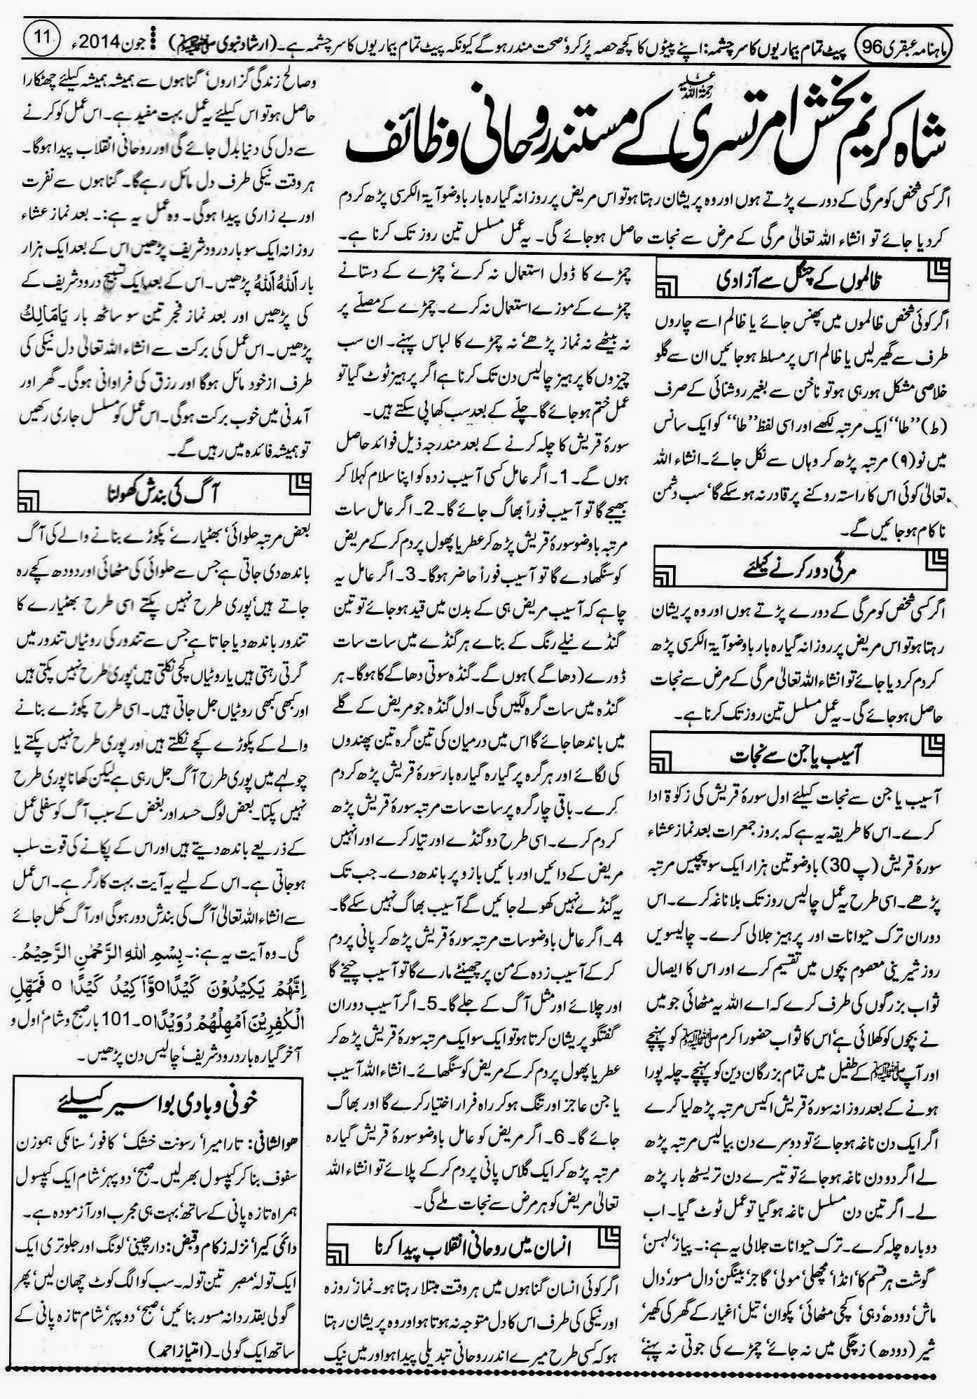 ubqari june 2014 page 11